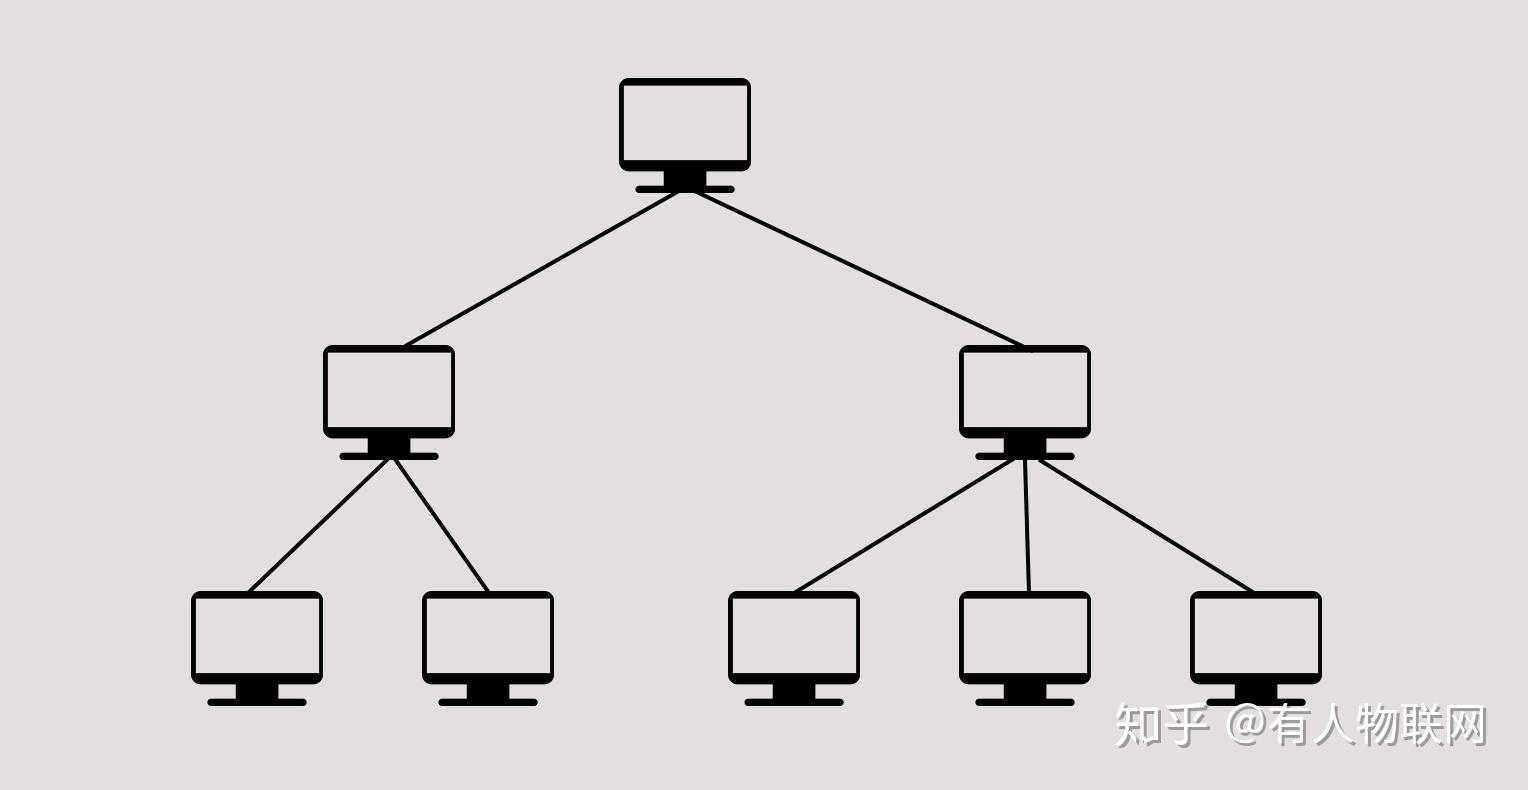 树状型拓扑结构图图片